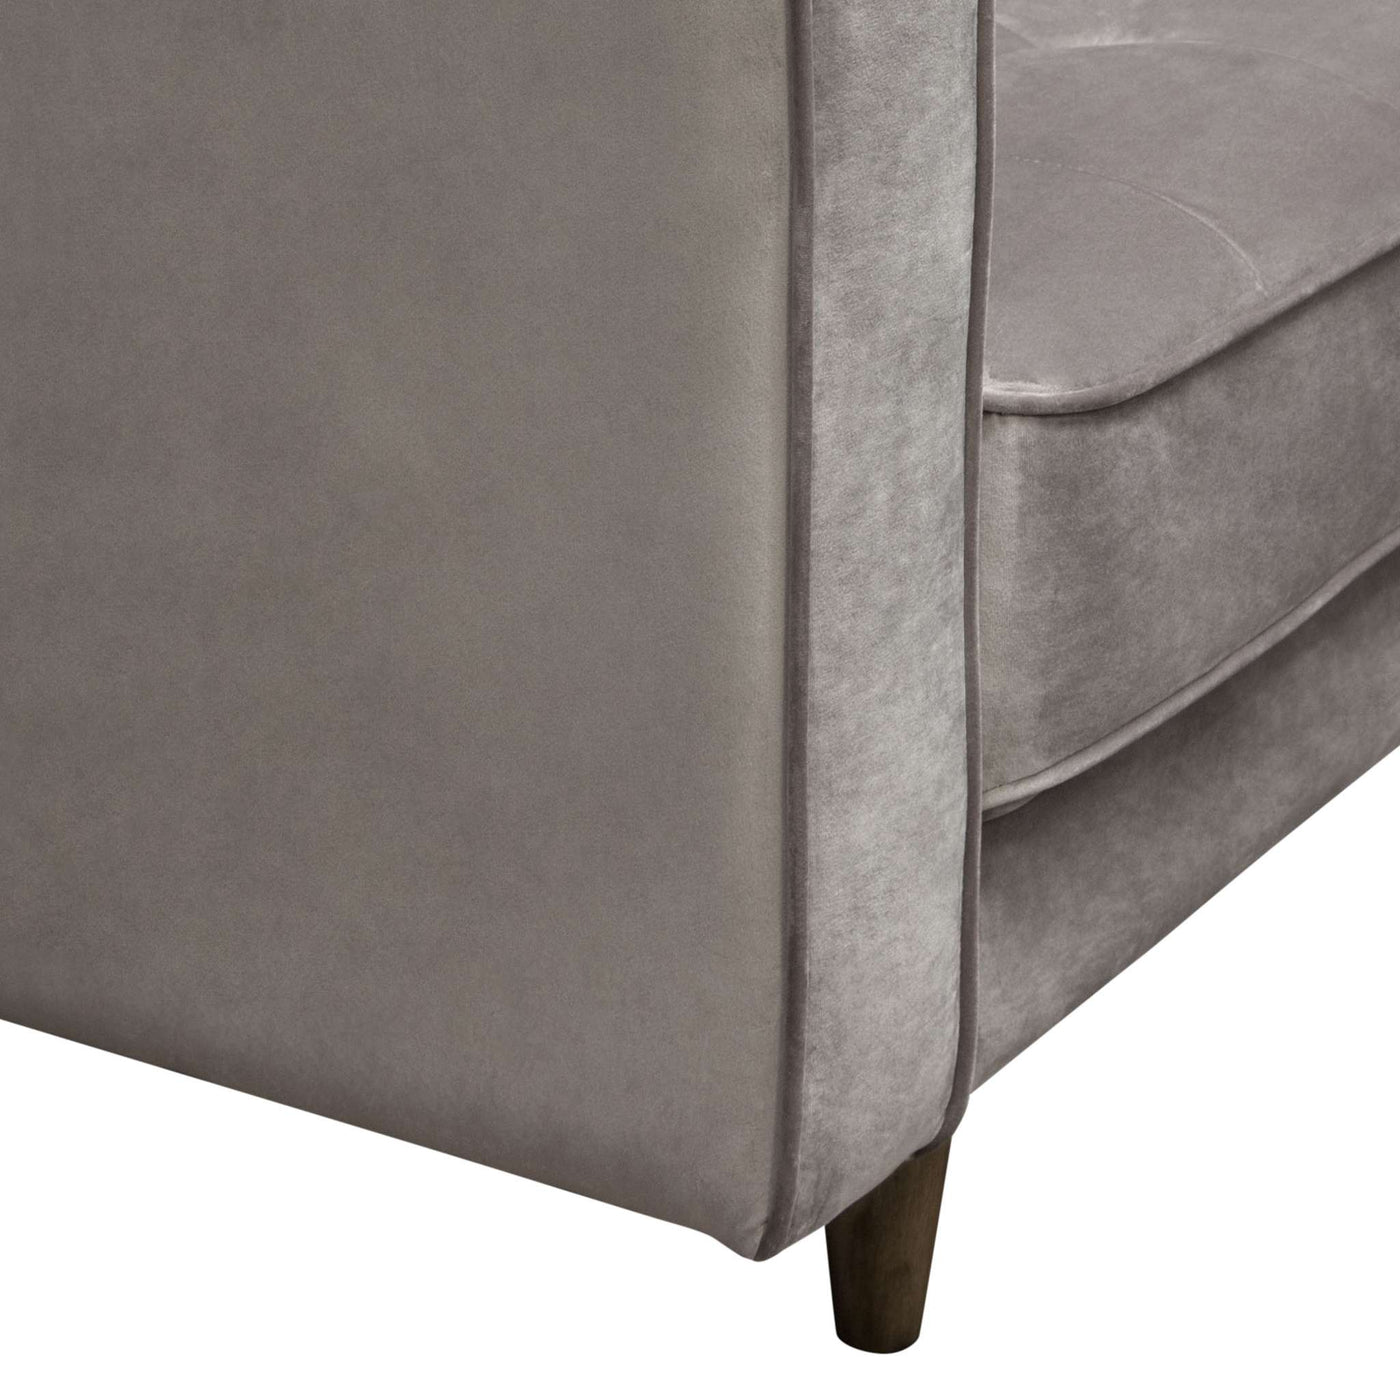 Juniper Tufted Chair in Velvet by Diamond Sofa